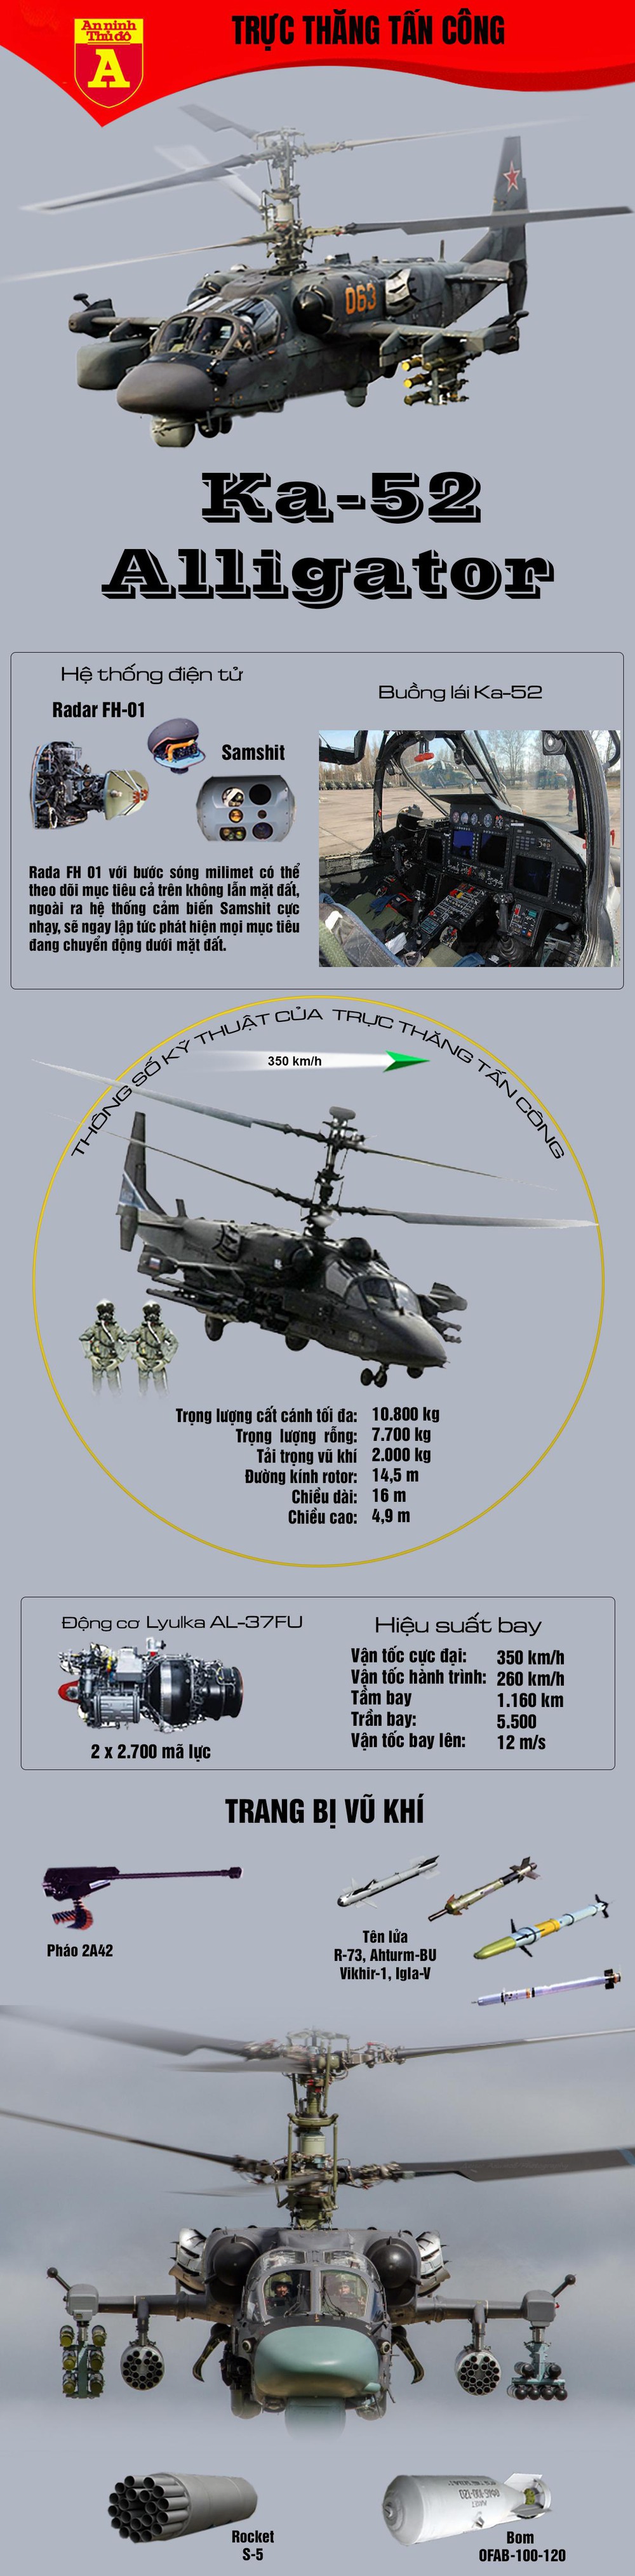 [Infographics] Tiết lộ nhiệm vụ hiện tại của siêu trực thăng tấn công Ka-52 Nga tại Syria - Ảnh 1